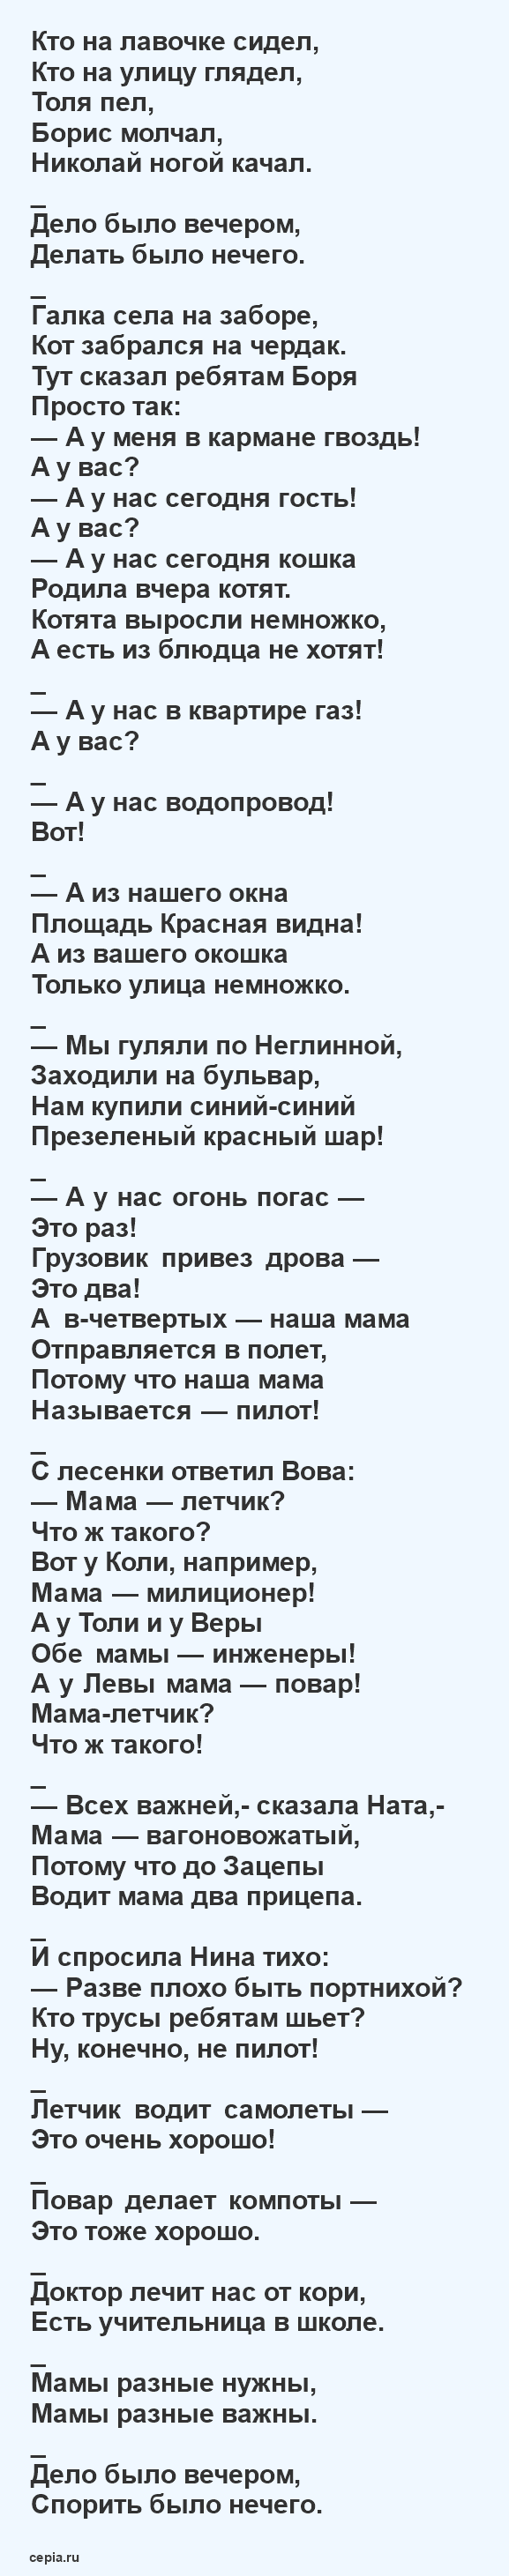 Читать красивые, детские стихи классиков Михалкова для детей 6-7 лет про детей - А что у вас